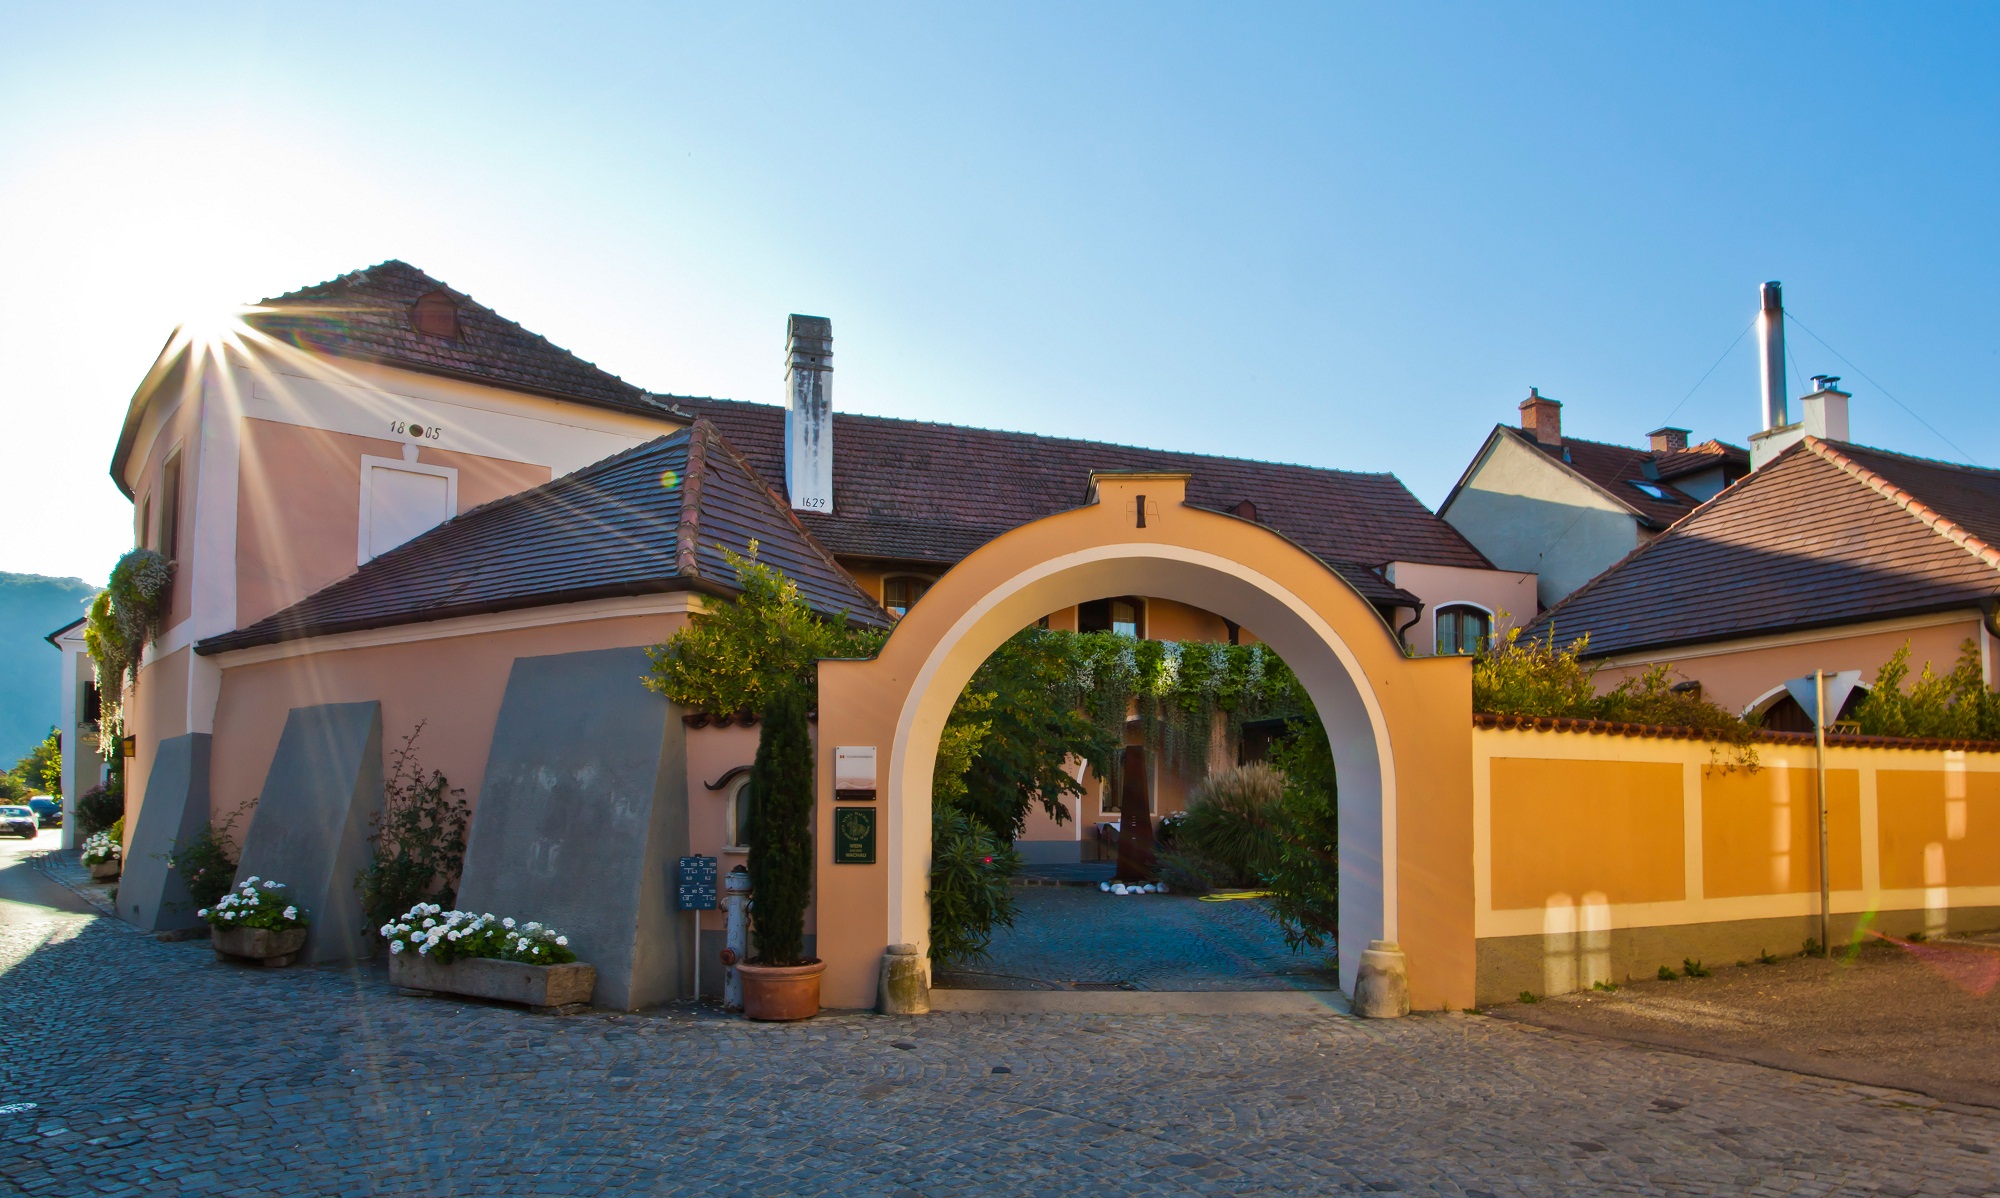 das Gebäude des Weingut Tegernseerhof mit einem imposanten Torbogen als Eingang - gelb/weiß im klassischen Stil